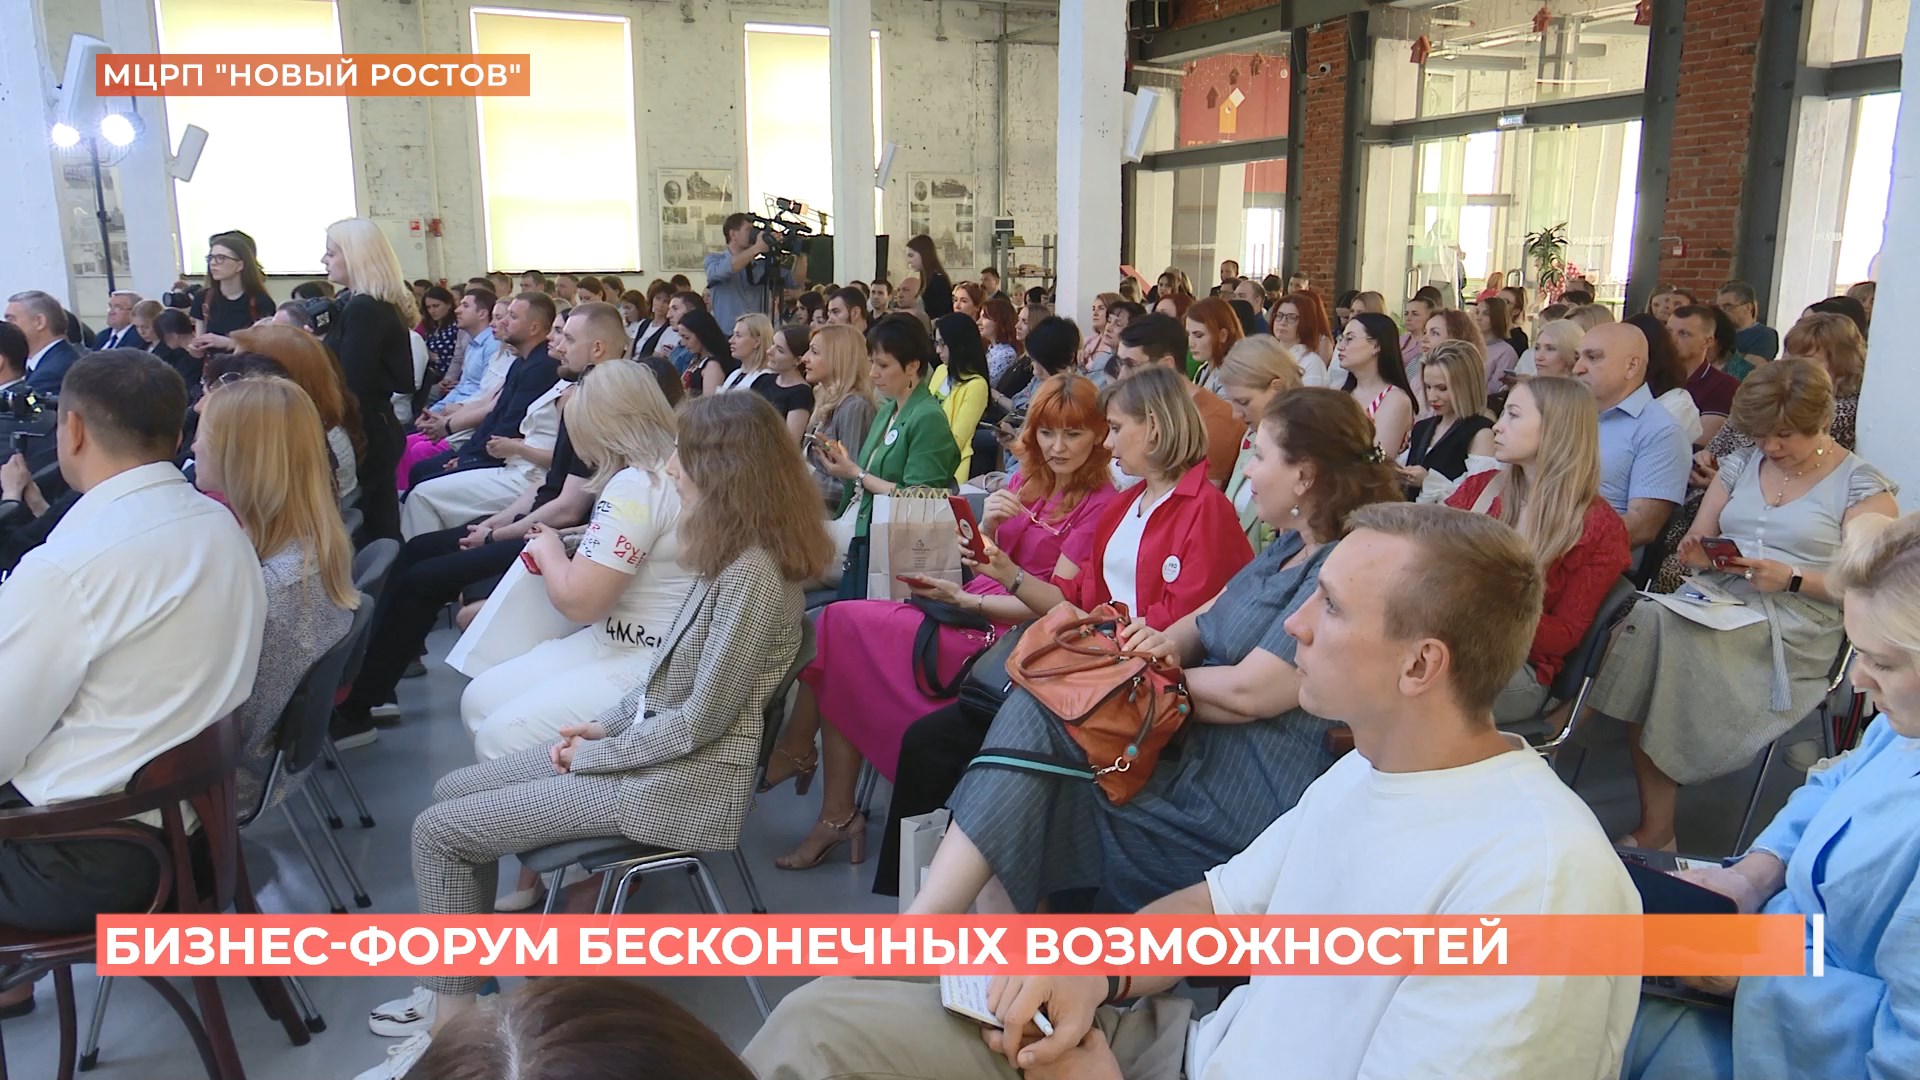 Бизнес-форум бесконечных возможностей провели в Ростове в День предпринимательства